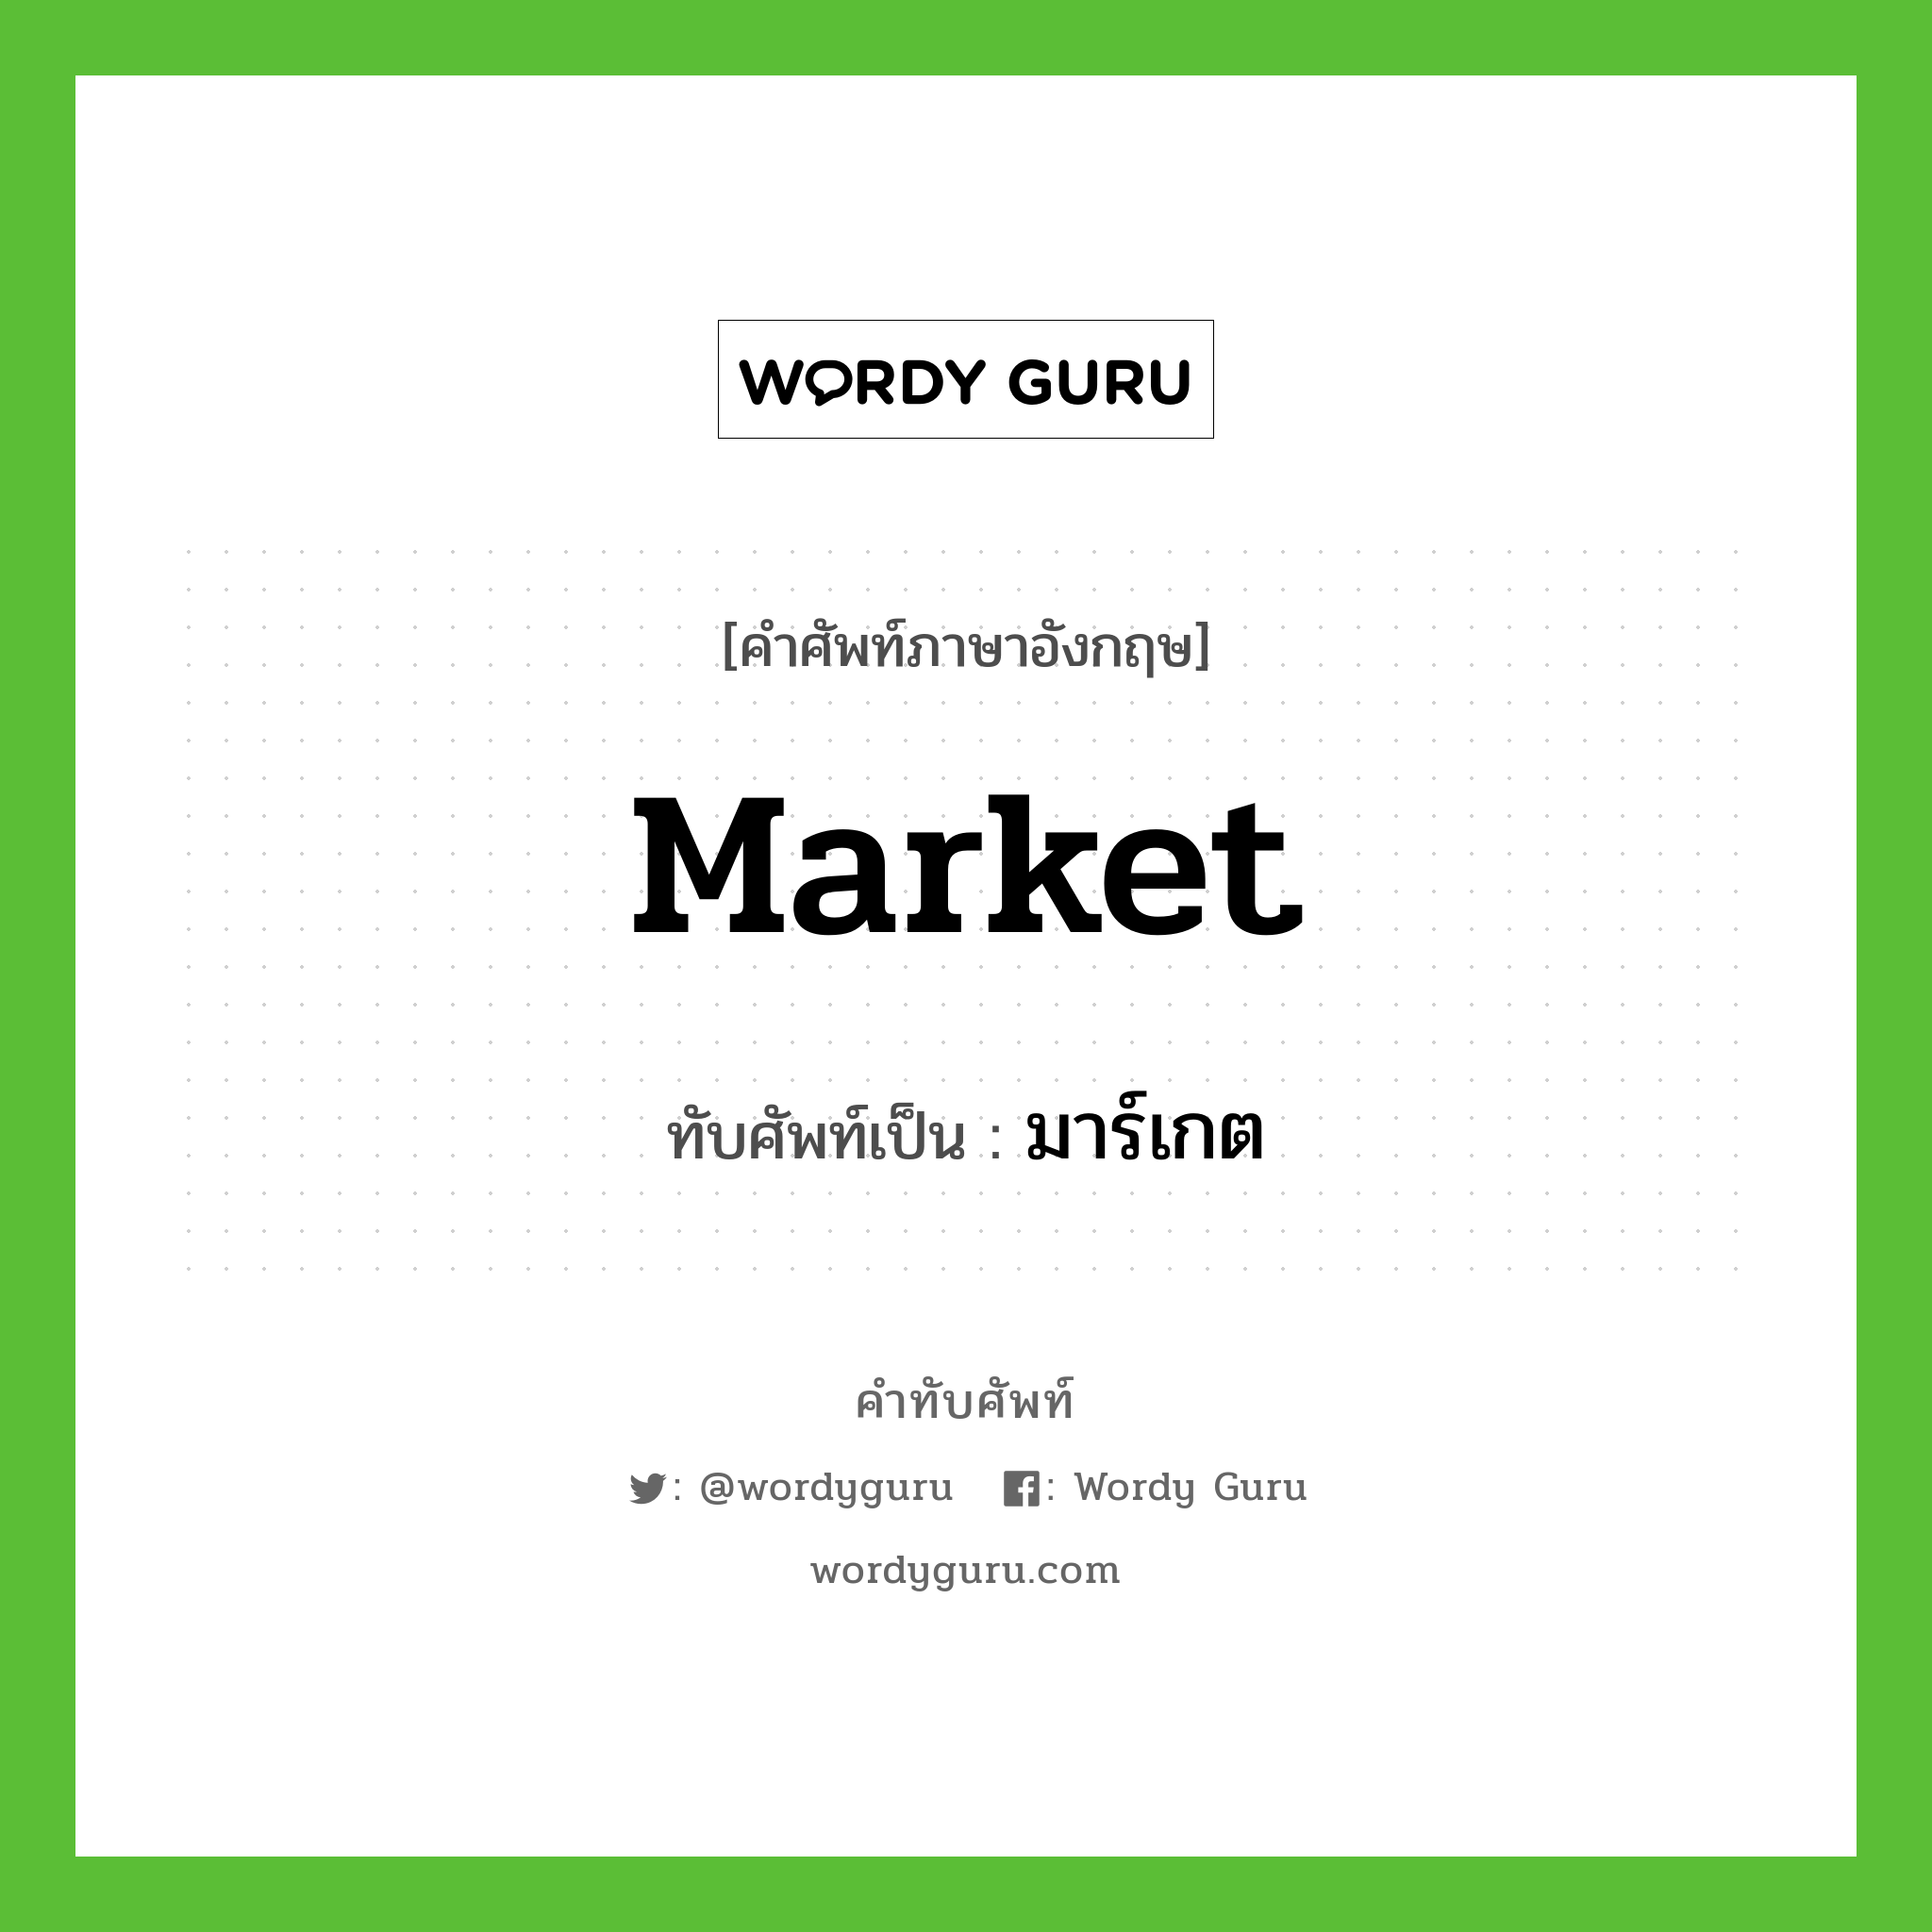 market เขียนเป็นคำไทยว่าอะไร?, คำศัพท์ภาษาอังกฤษ market ทับศัพท์เป็น มาร์เกต